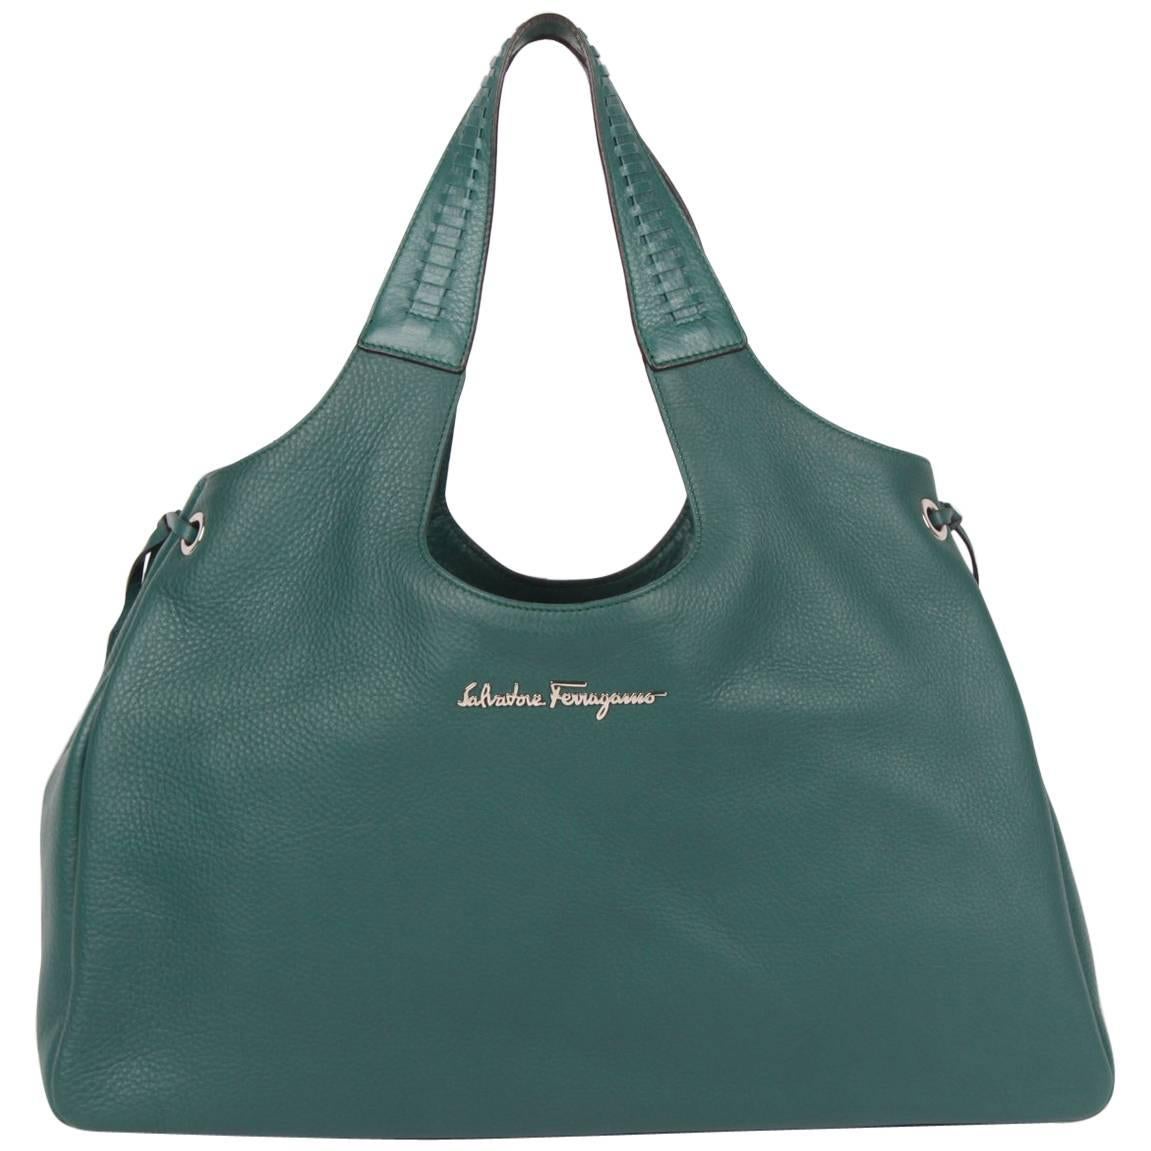 Salvatore Ferragamo Large Tote Bag - emerald green For Sale